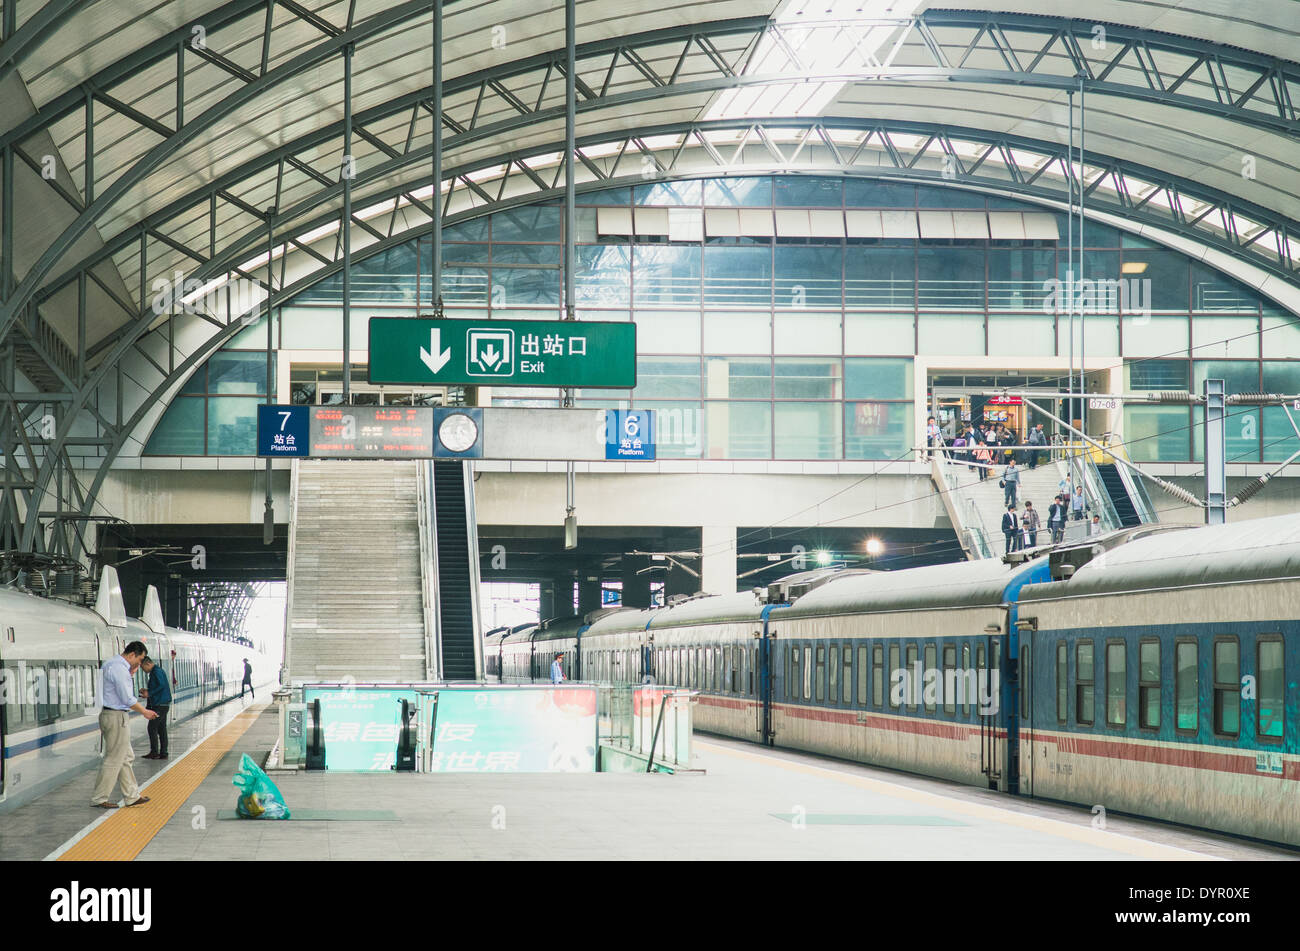 La estación de tren de Wuhan, una moderna estación de tren en China. Foto de stock